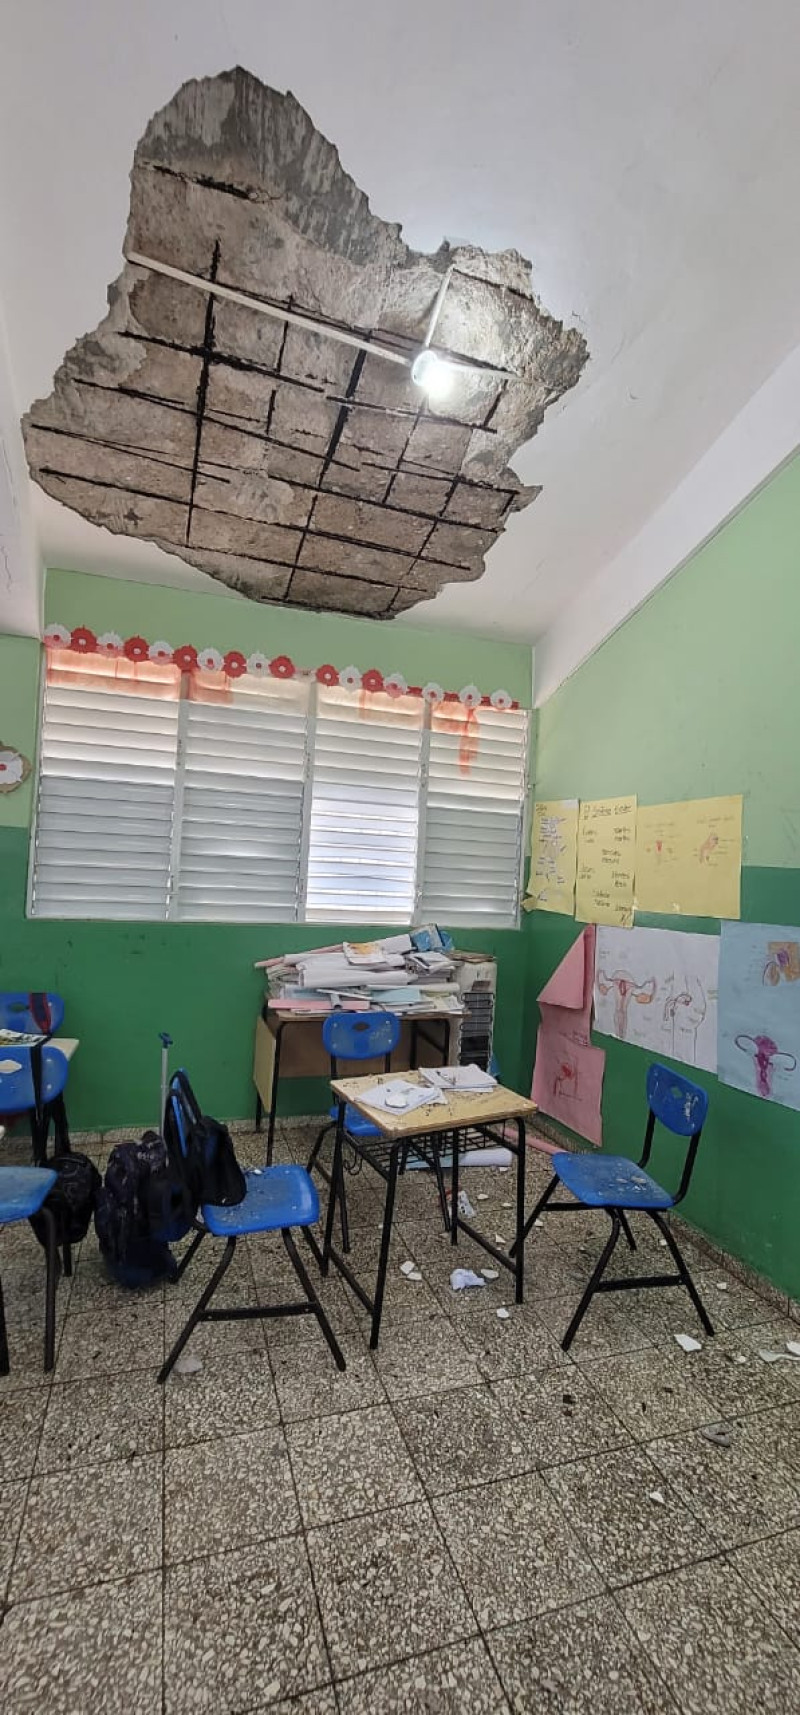 El centro educativo Juan Pablo Duarte ha pedido reiteradamente ser intervenida, pero las autoridades educativas no hacen esfuerzos suficientes